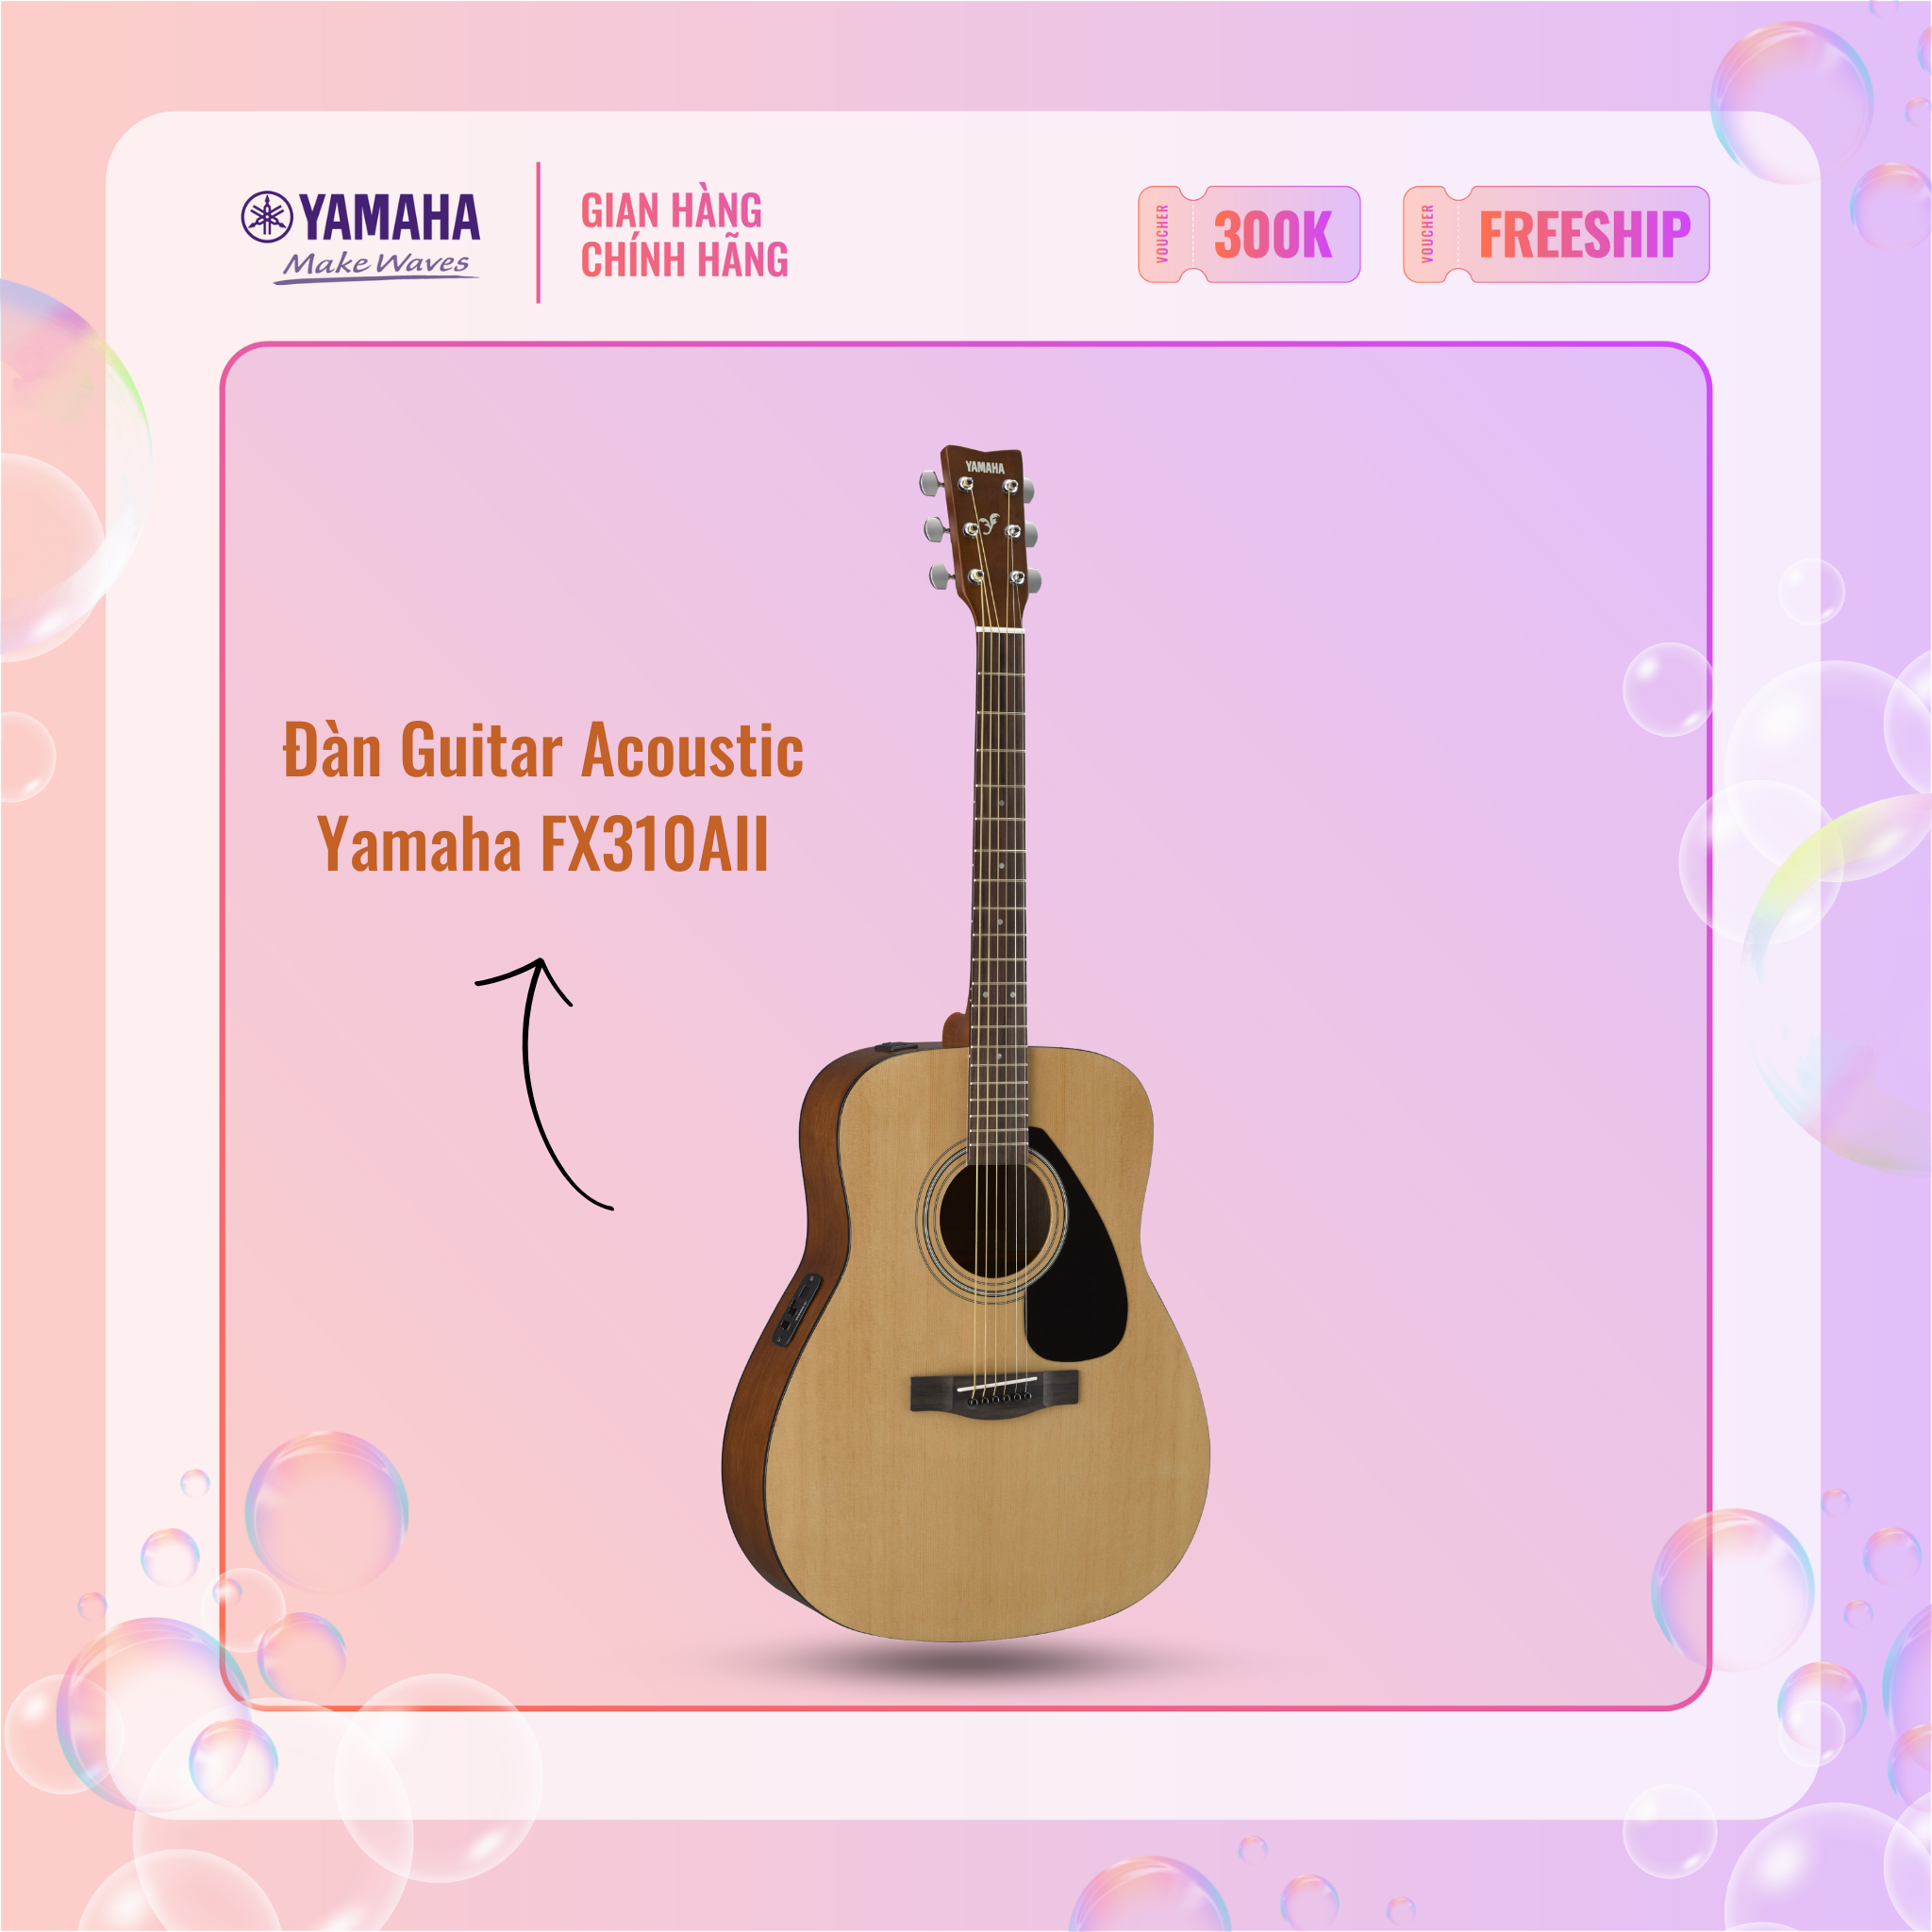 Đàn Guitar Acoustic YAMAHA FX310AII - Mặt đàn gỗ vân sam, mặt sườn và lưng đàn từ gỗ nato, hệ thống âm thanh Pickup ART, bảo hành chính hãng 12 tháng - Hàng chính hãng